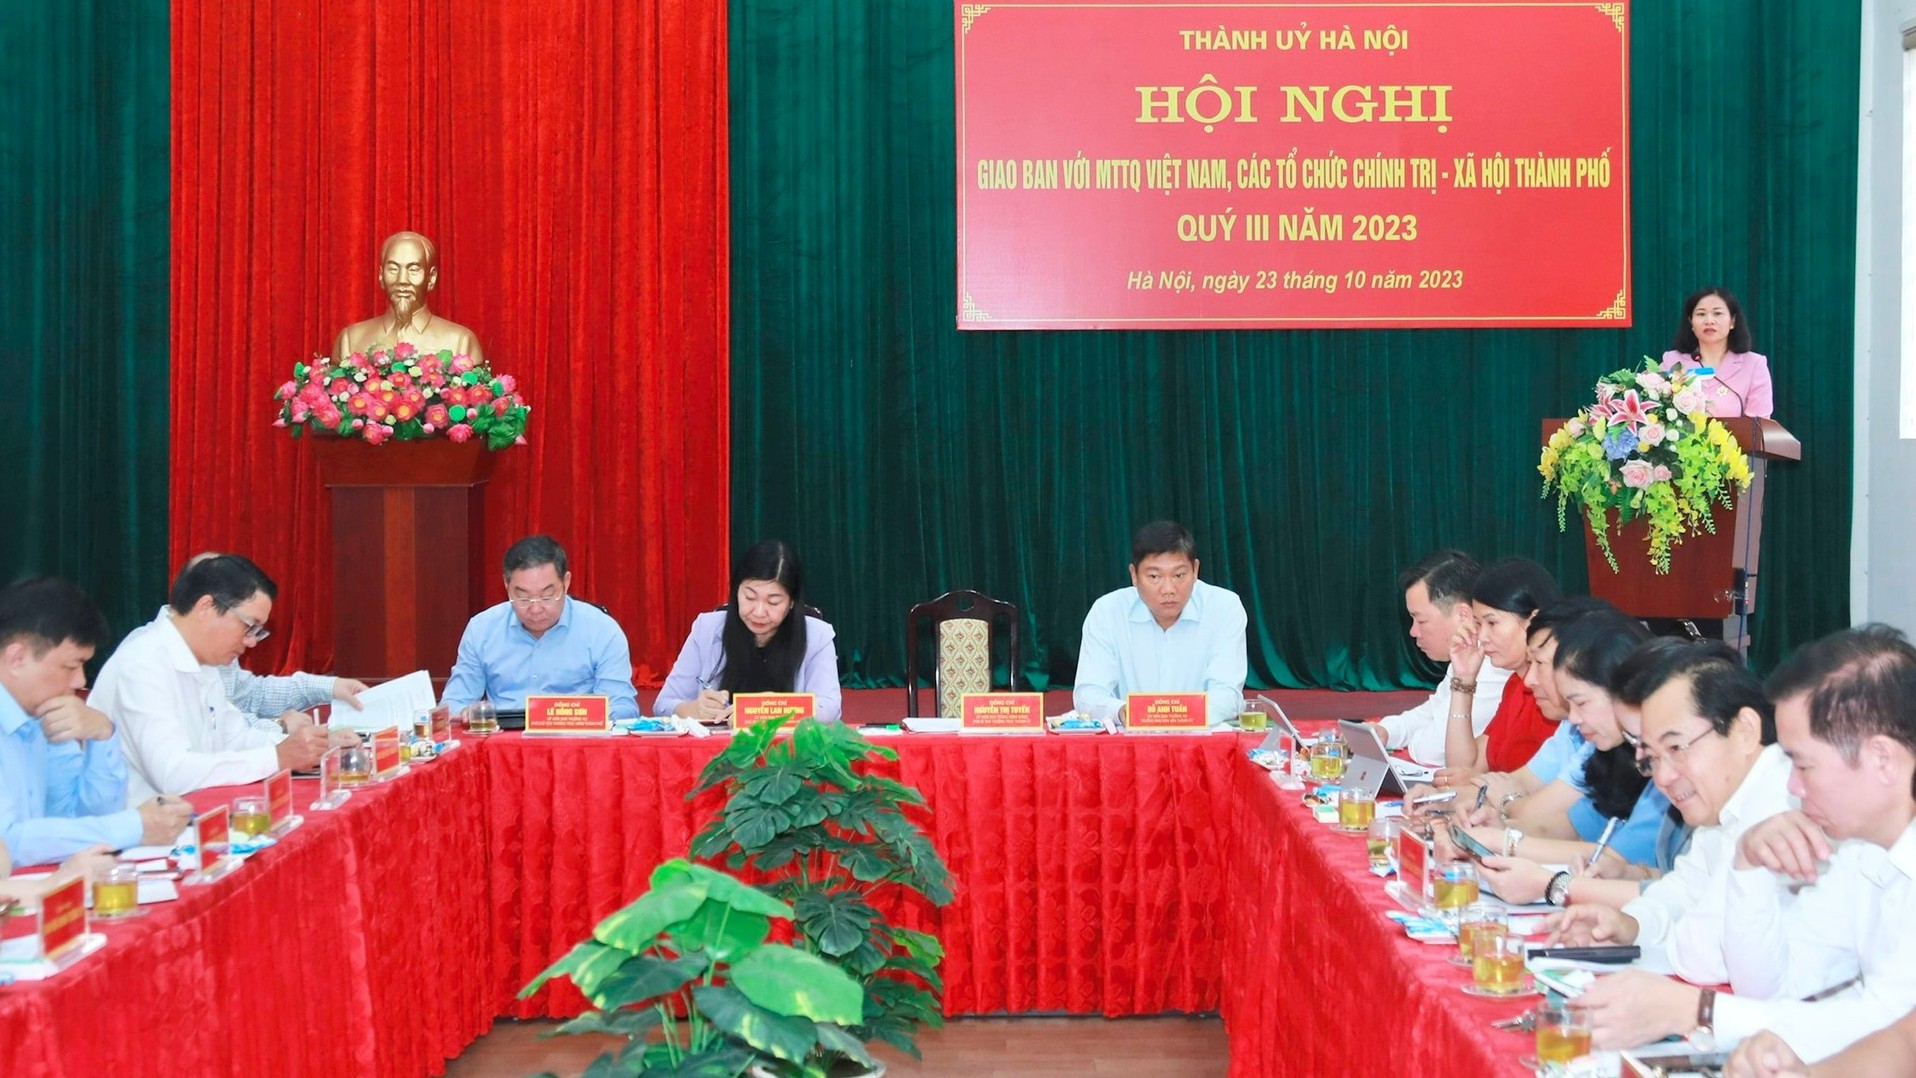 Phát huy vai trò của Mặt trận Tổ quốc Việt Nam và các tổ chức chính trị - xã hội thành phố Hà Nội